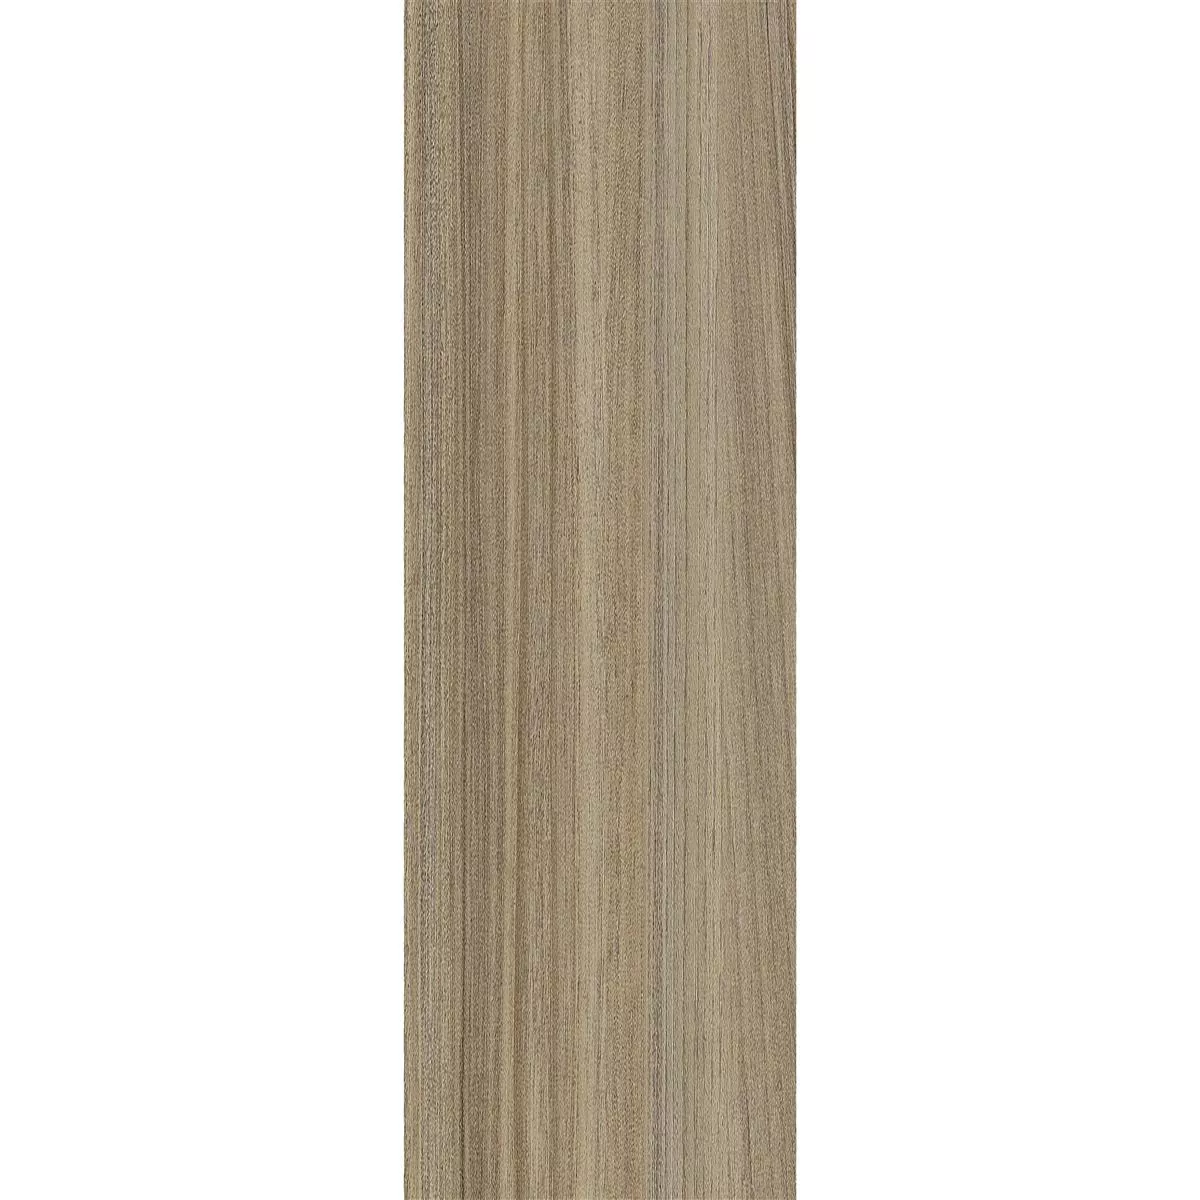 Piastrelle In Vinile Sistema A Clic Tinadia Beige 17,2x121cm